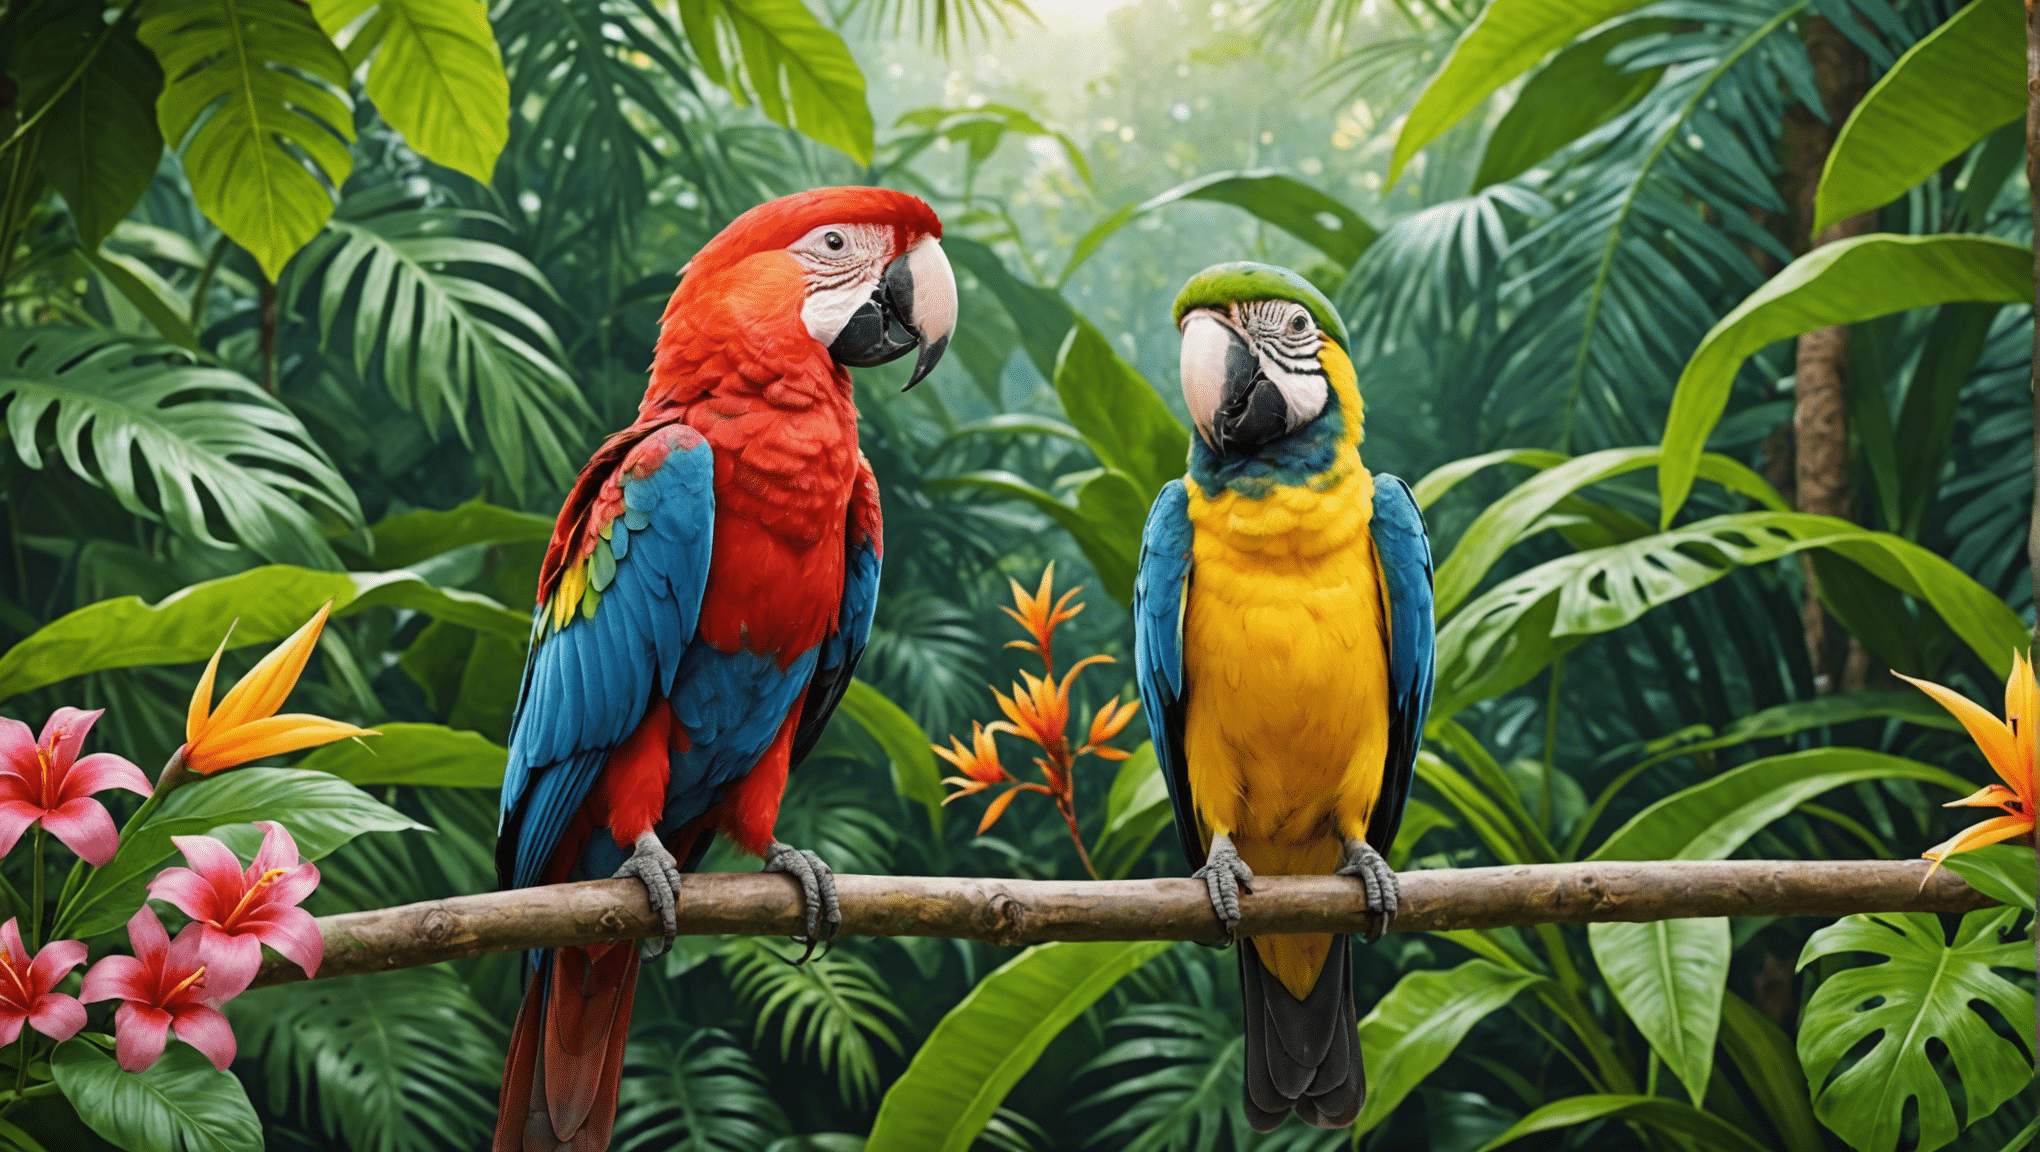 explorez le monde enchanteur des oiseaux tropicaux avec notre fascinante collection d’articles et d’images.